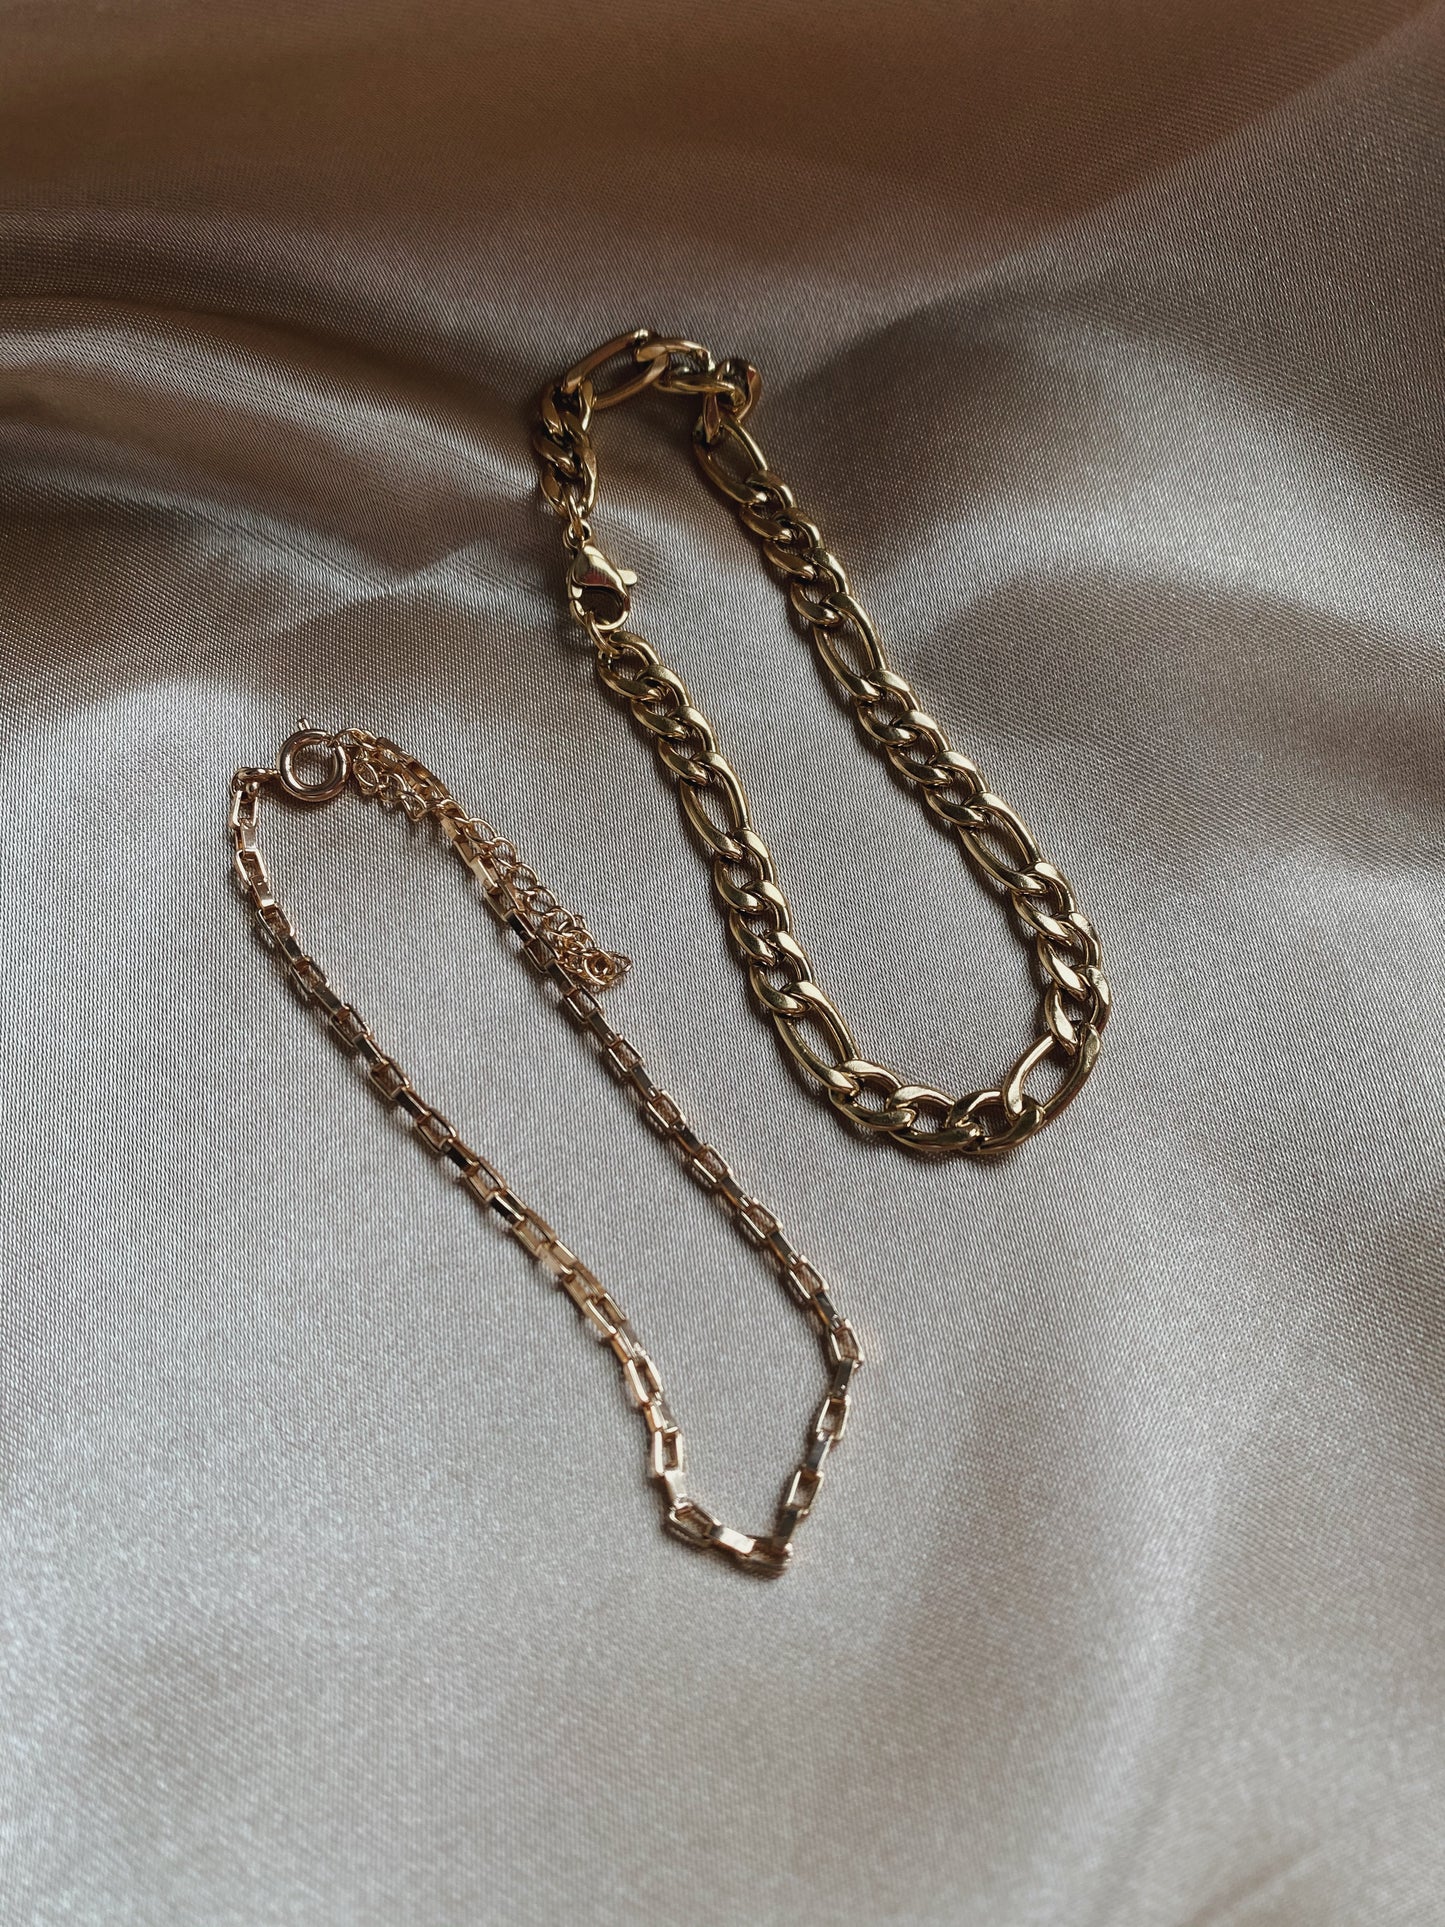 Sinclaire Bracelet